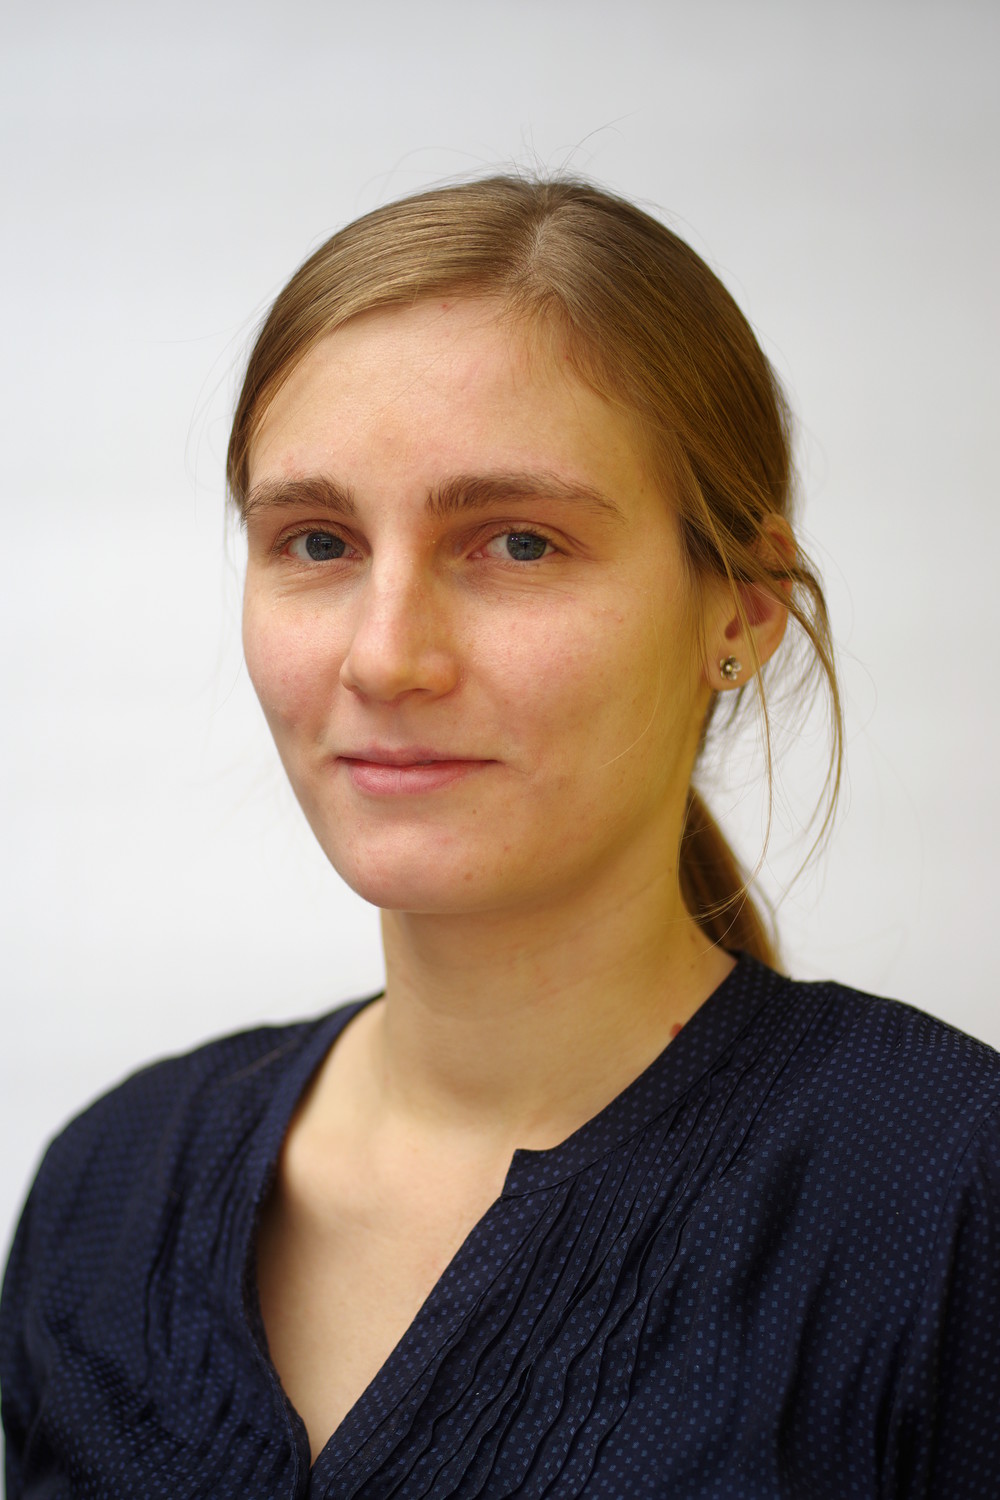 This image shows Maria Alkämper